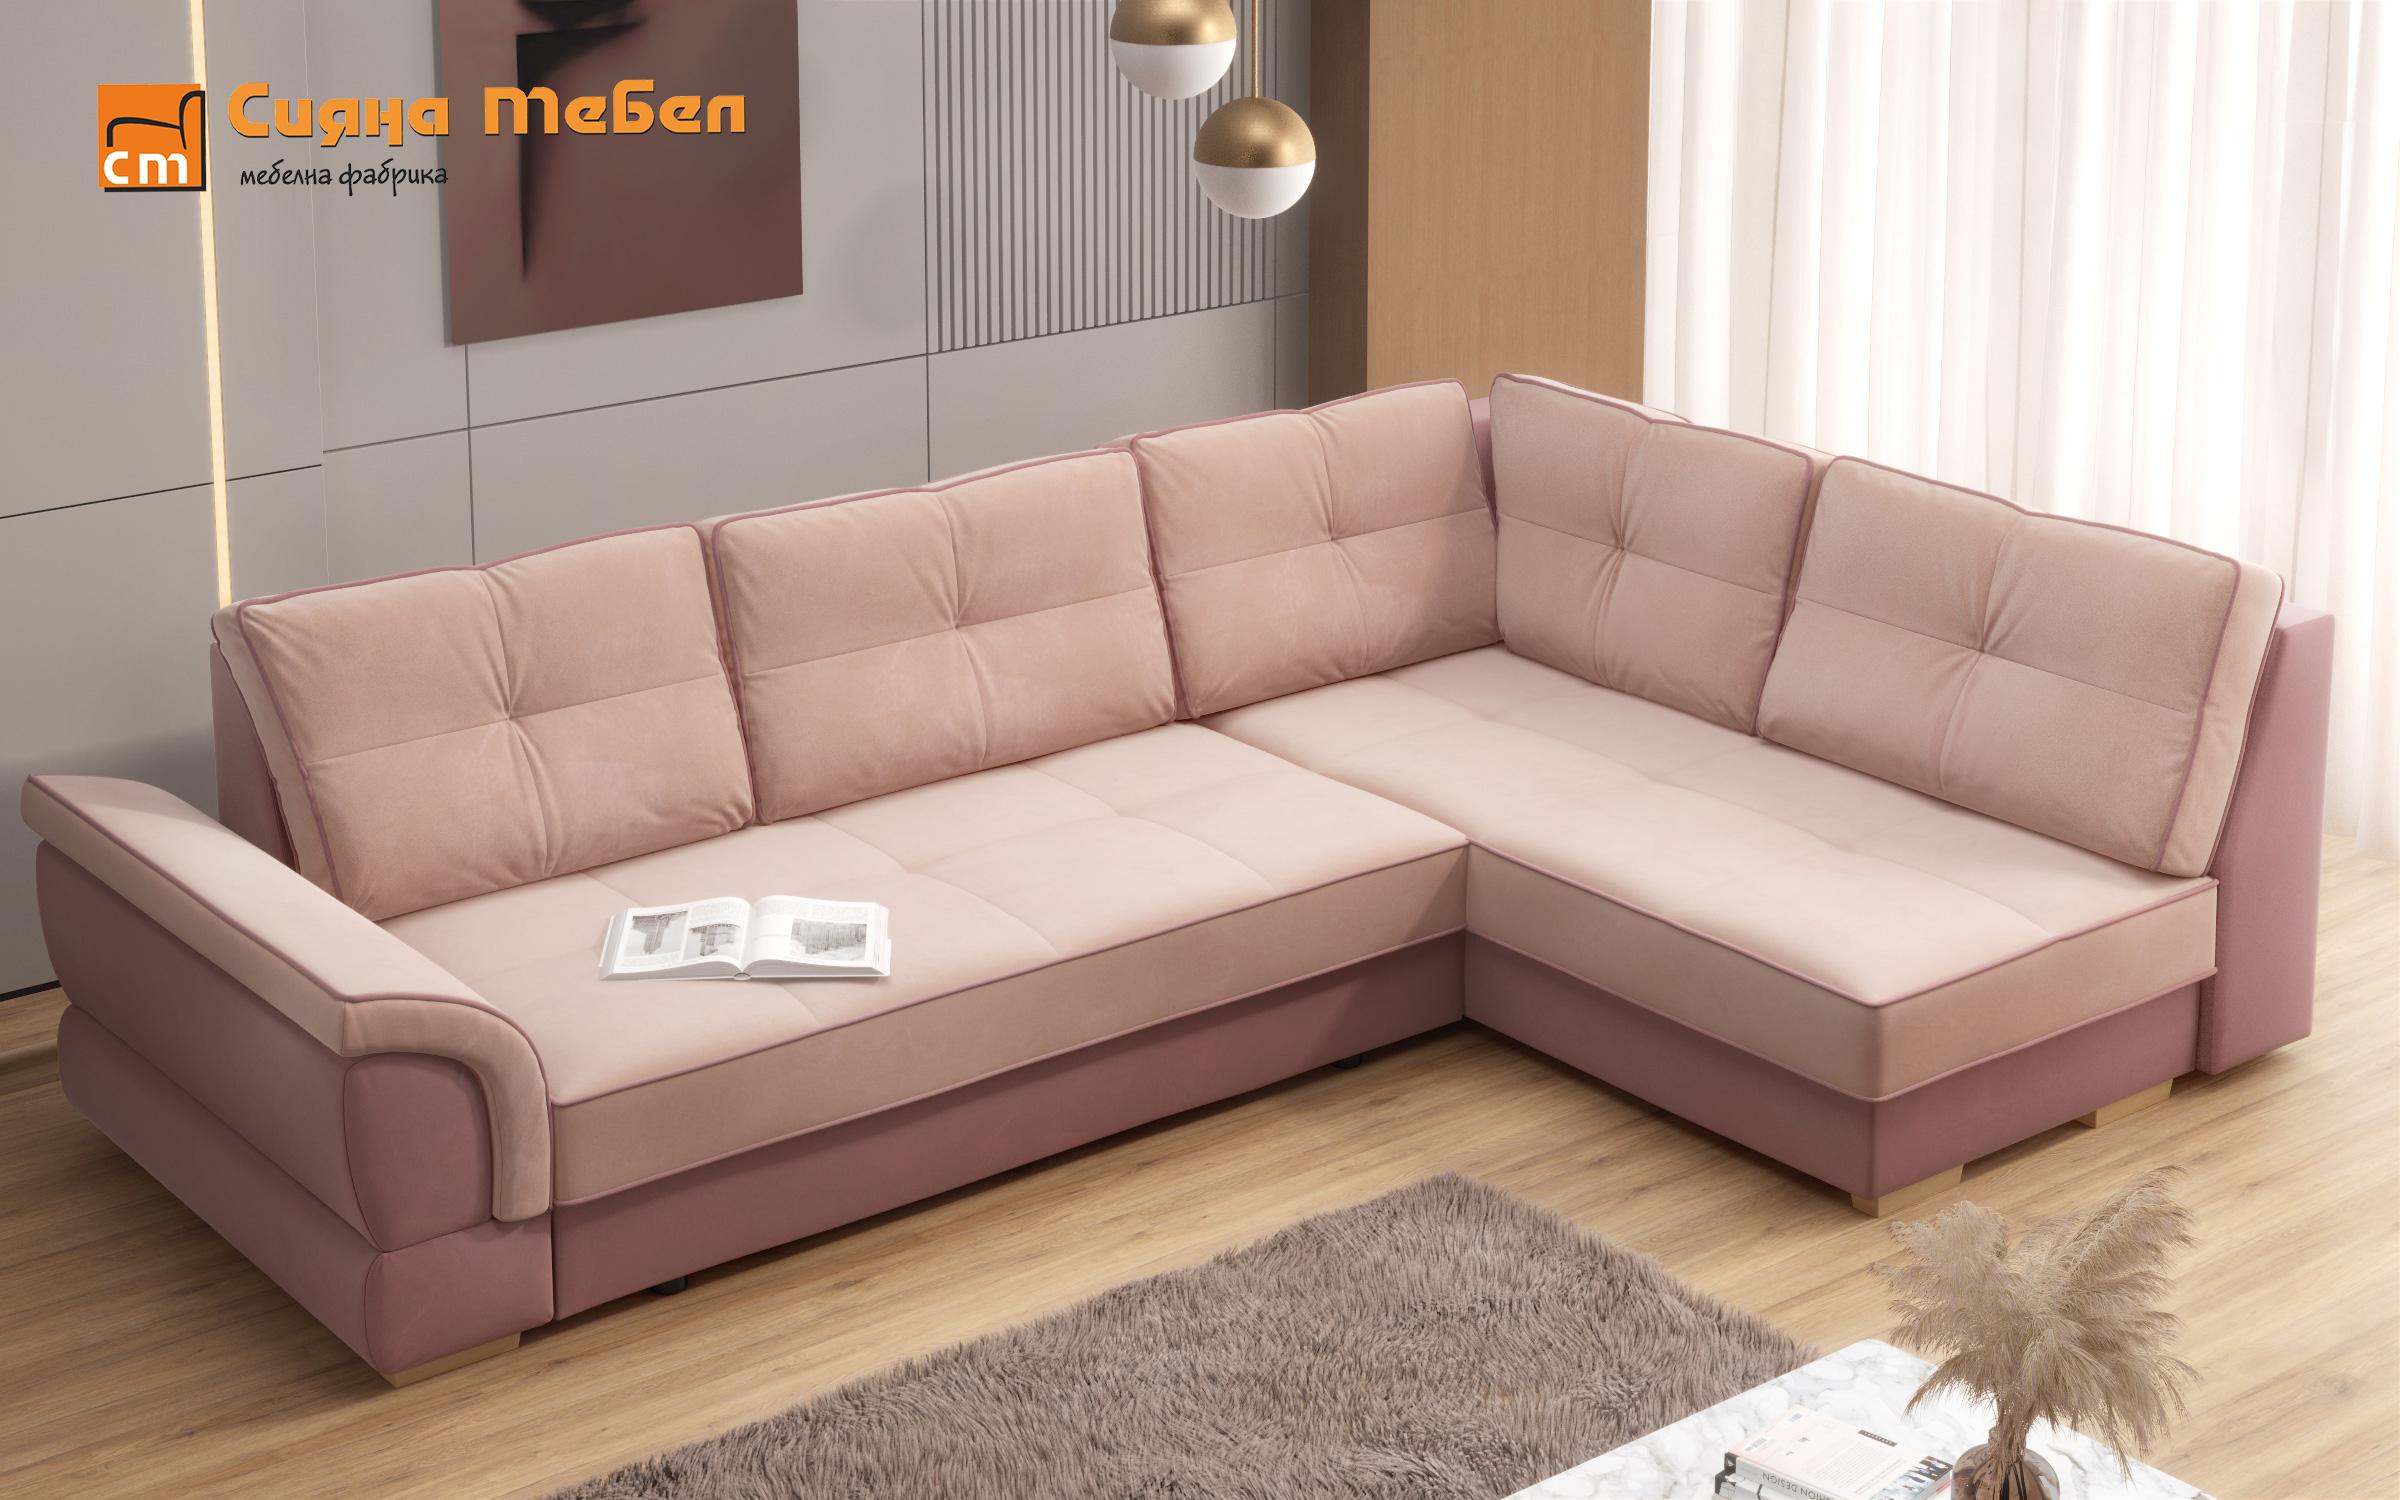 Γωνιακός καναπές Next, ροζ + ανοιχτό ροζ  4